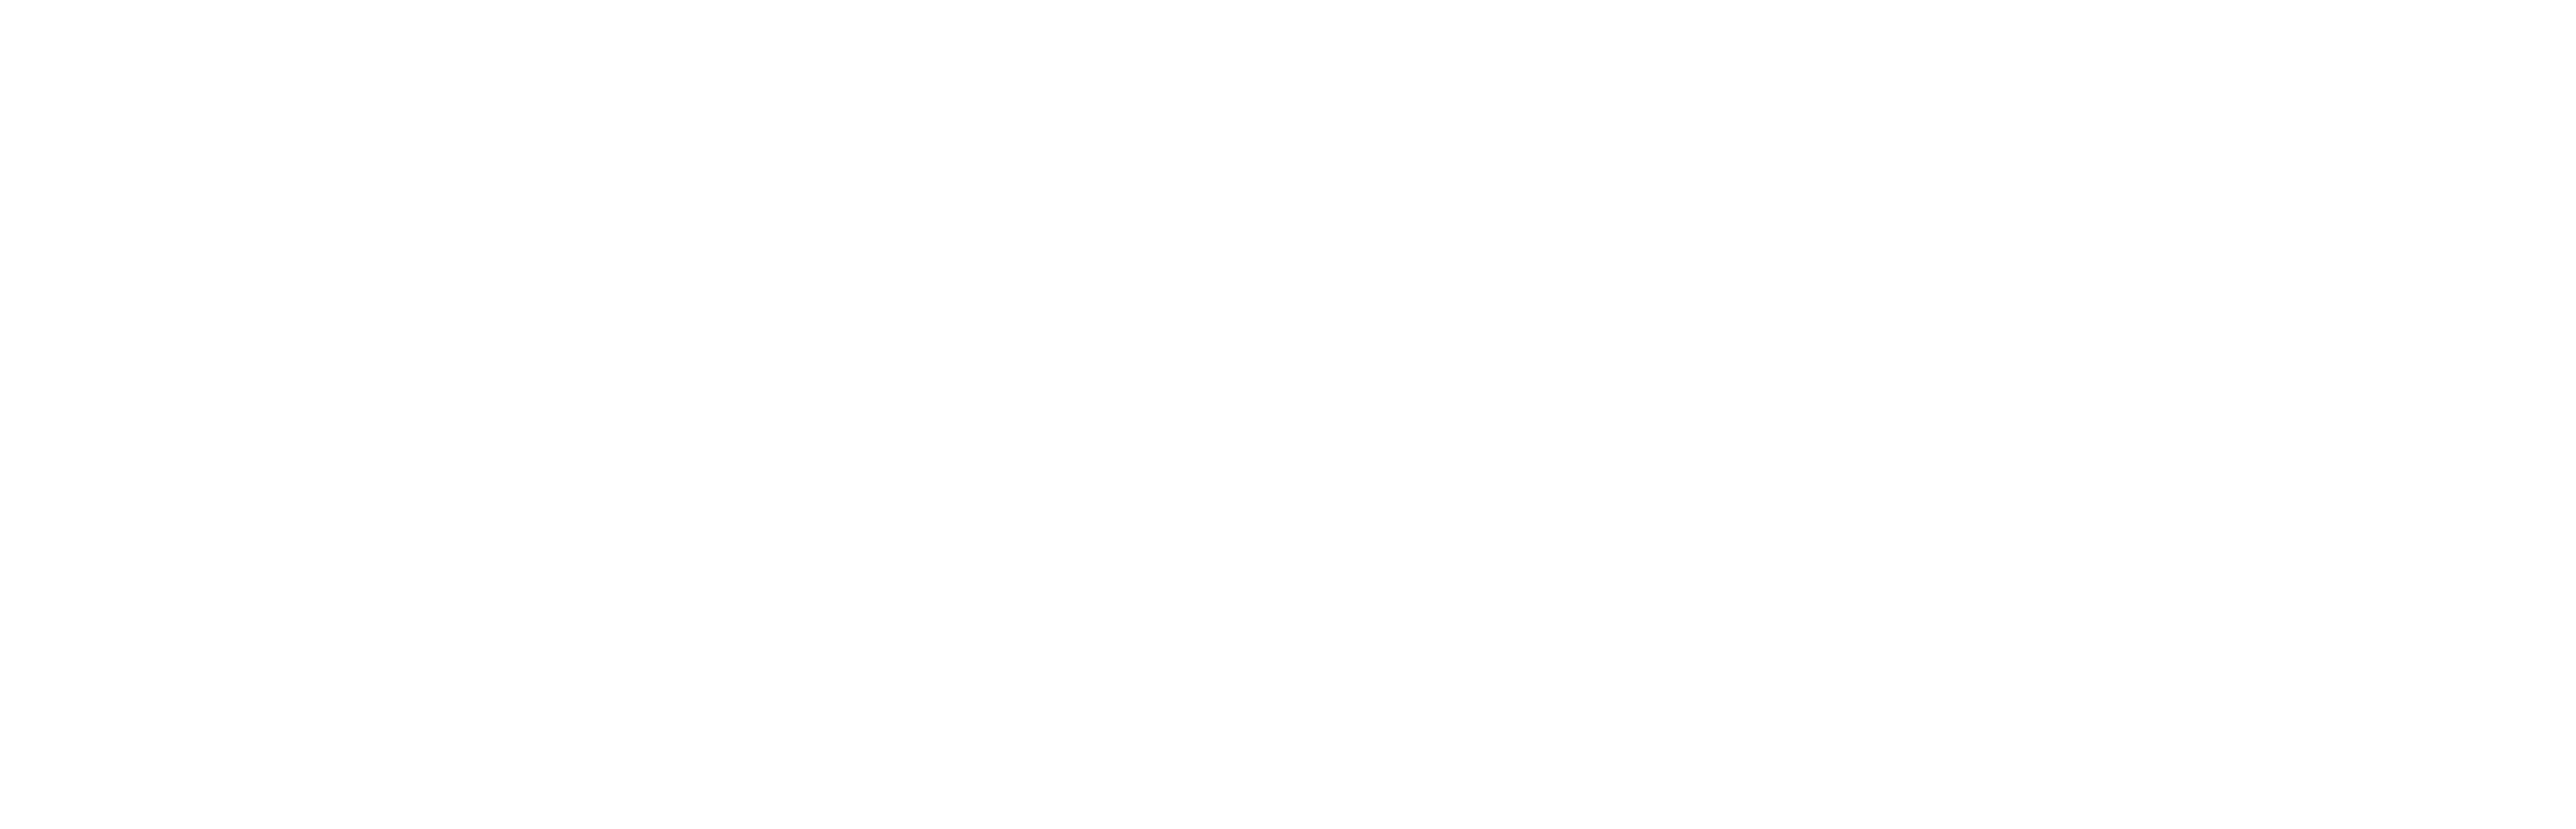 https://www.saastock.com/wp-content/uploads/2020/10/Celigo-logo-.png